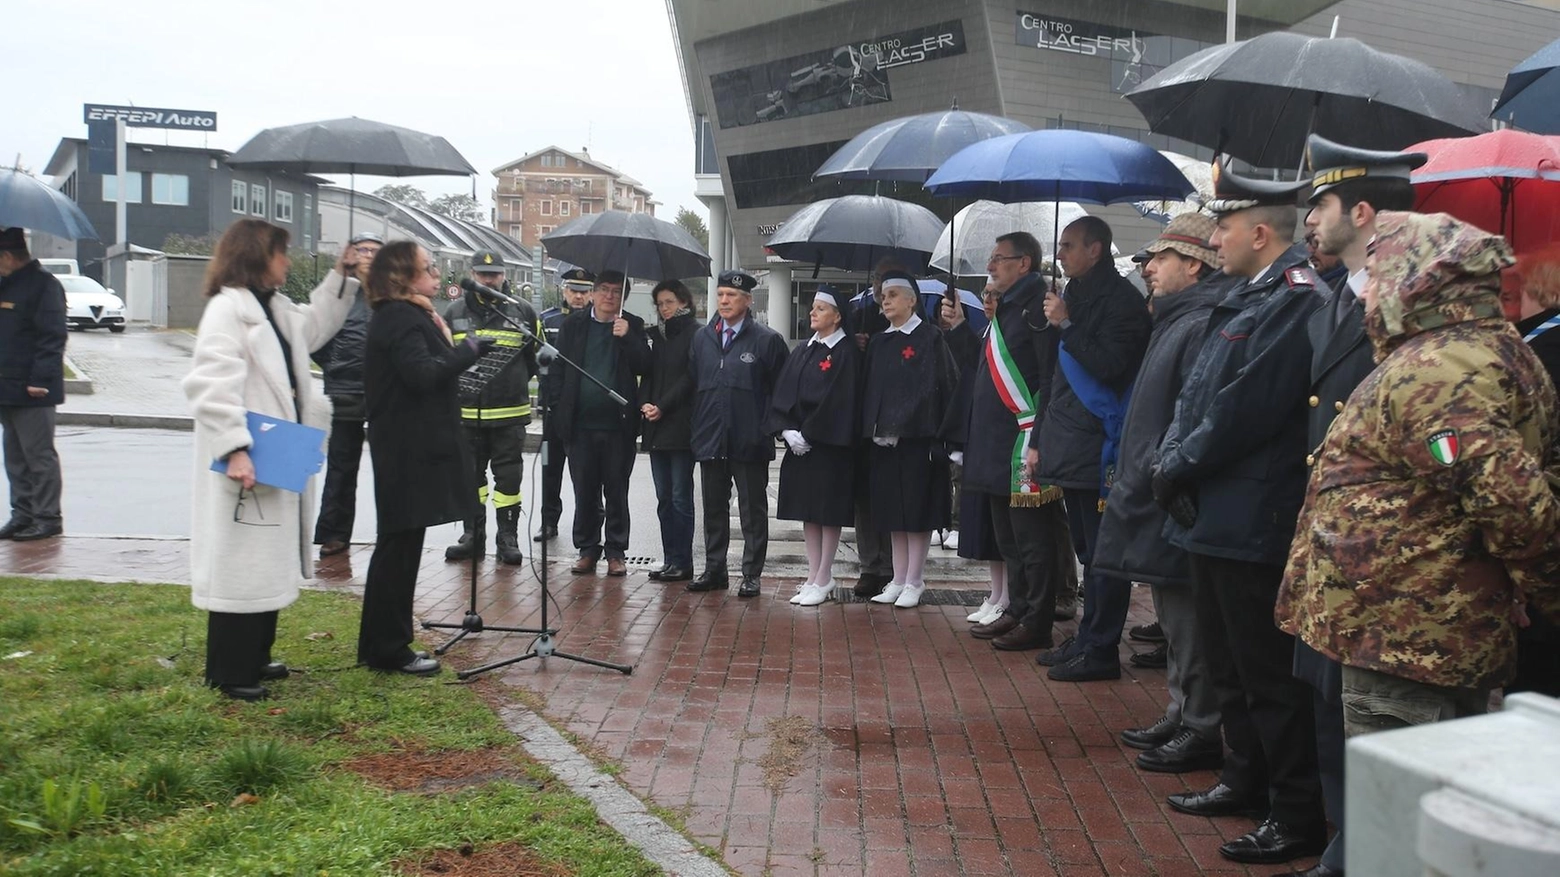 Il sindaco commemora le Foibe: "Conosciamo la nostra storia"